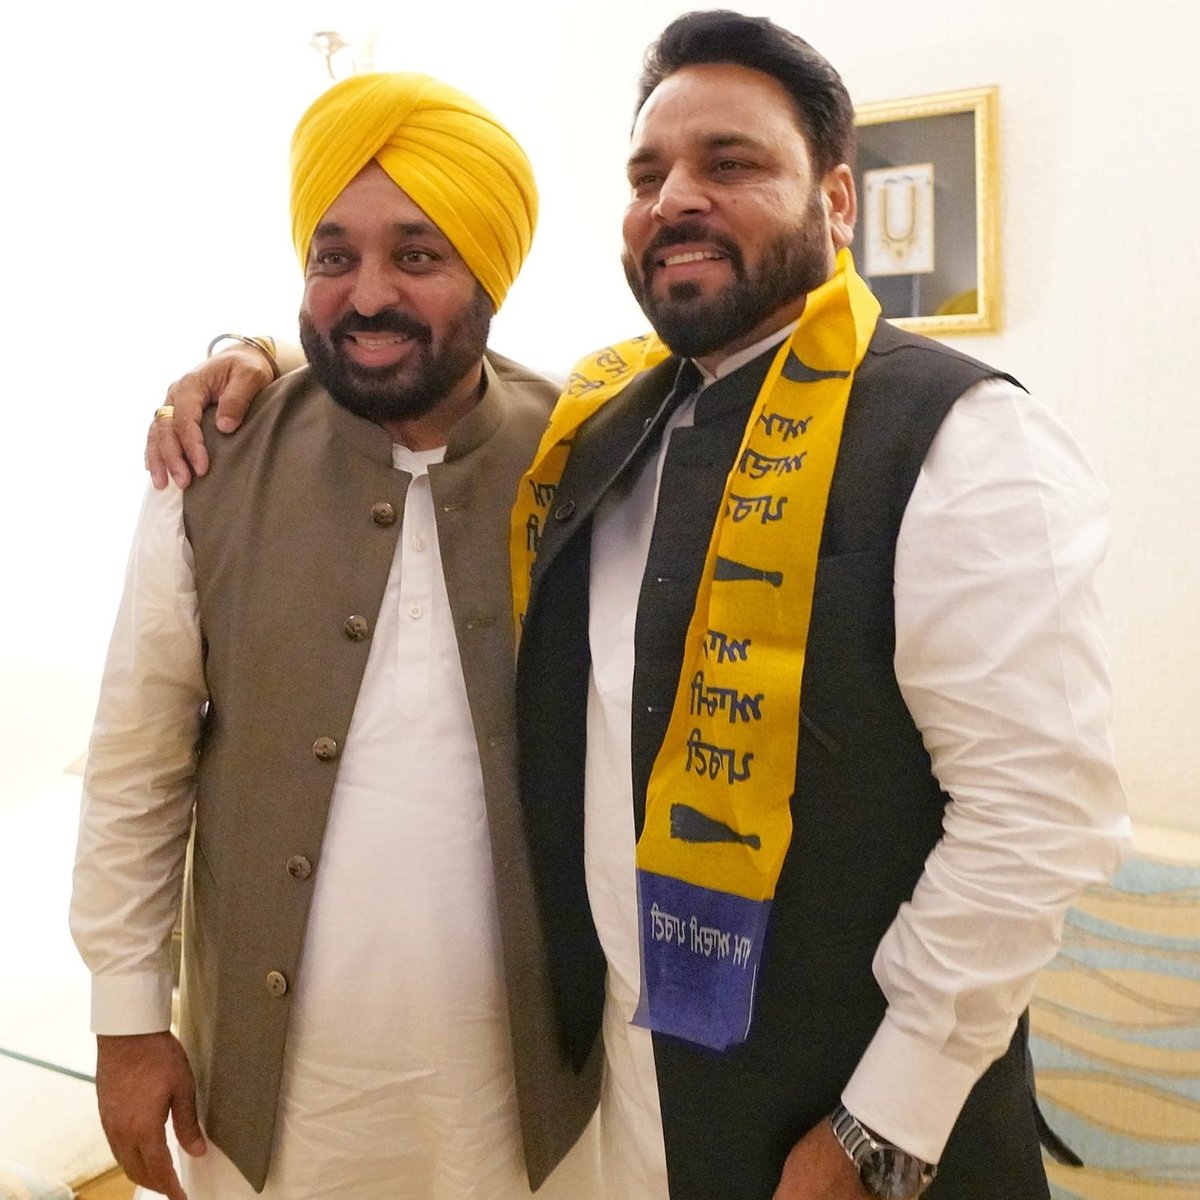 होशियारपुर से बसपा के प्रत्याशी राकेश सोमन ने आम आदमी पार्टी की सदस्यता ली बसपा कों 2019 में होशियारपुर में 1 लाख से अधिक वोट मिले थे